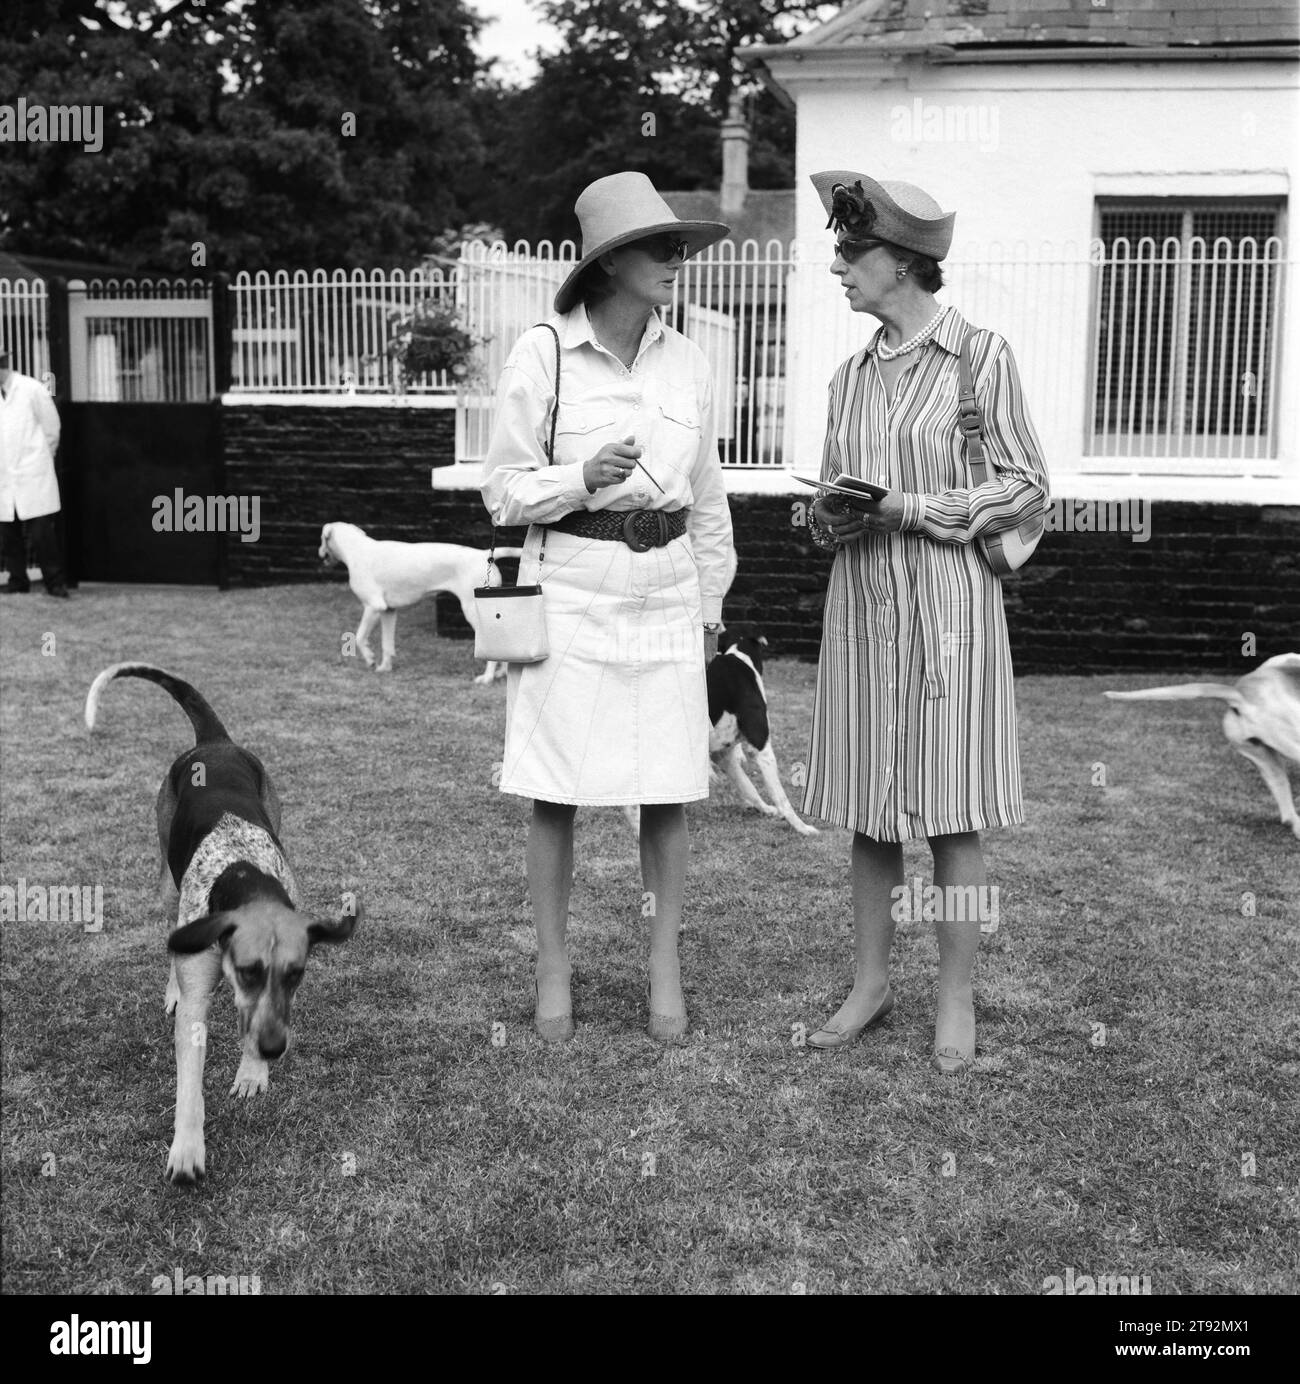 Pupy Show UK. Duke of Beaufort's Hunt, lo spettacolo di cuccioli a Badminton House. È il momento culminante della stagione estiva, dove gli amanti del cucciolo possono guardare con orgoglio le loro cariche fare del loro meglio. Due signore discutono dei meriti dei cuccioli alla fine della competizione. Badminton, Gloucestershire Inghilterra Regno Unito anni '2002 2000 HOMER SYKES Foto Stock